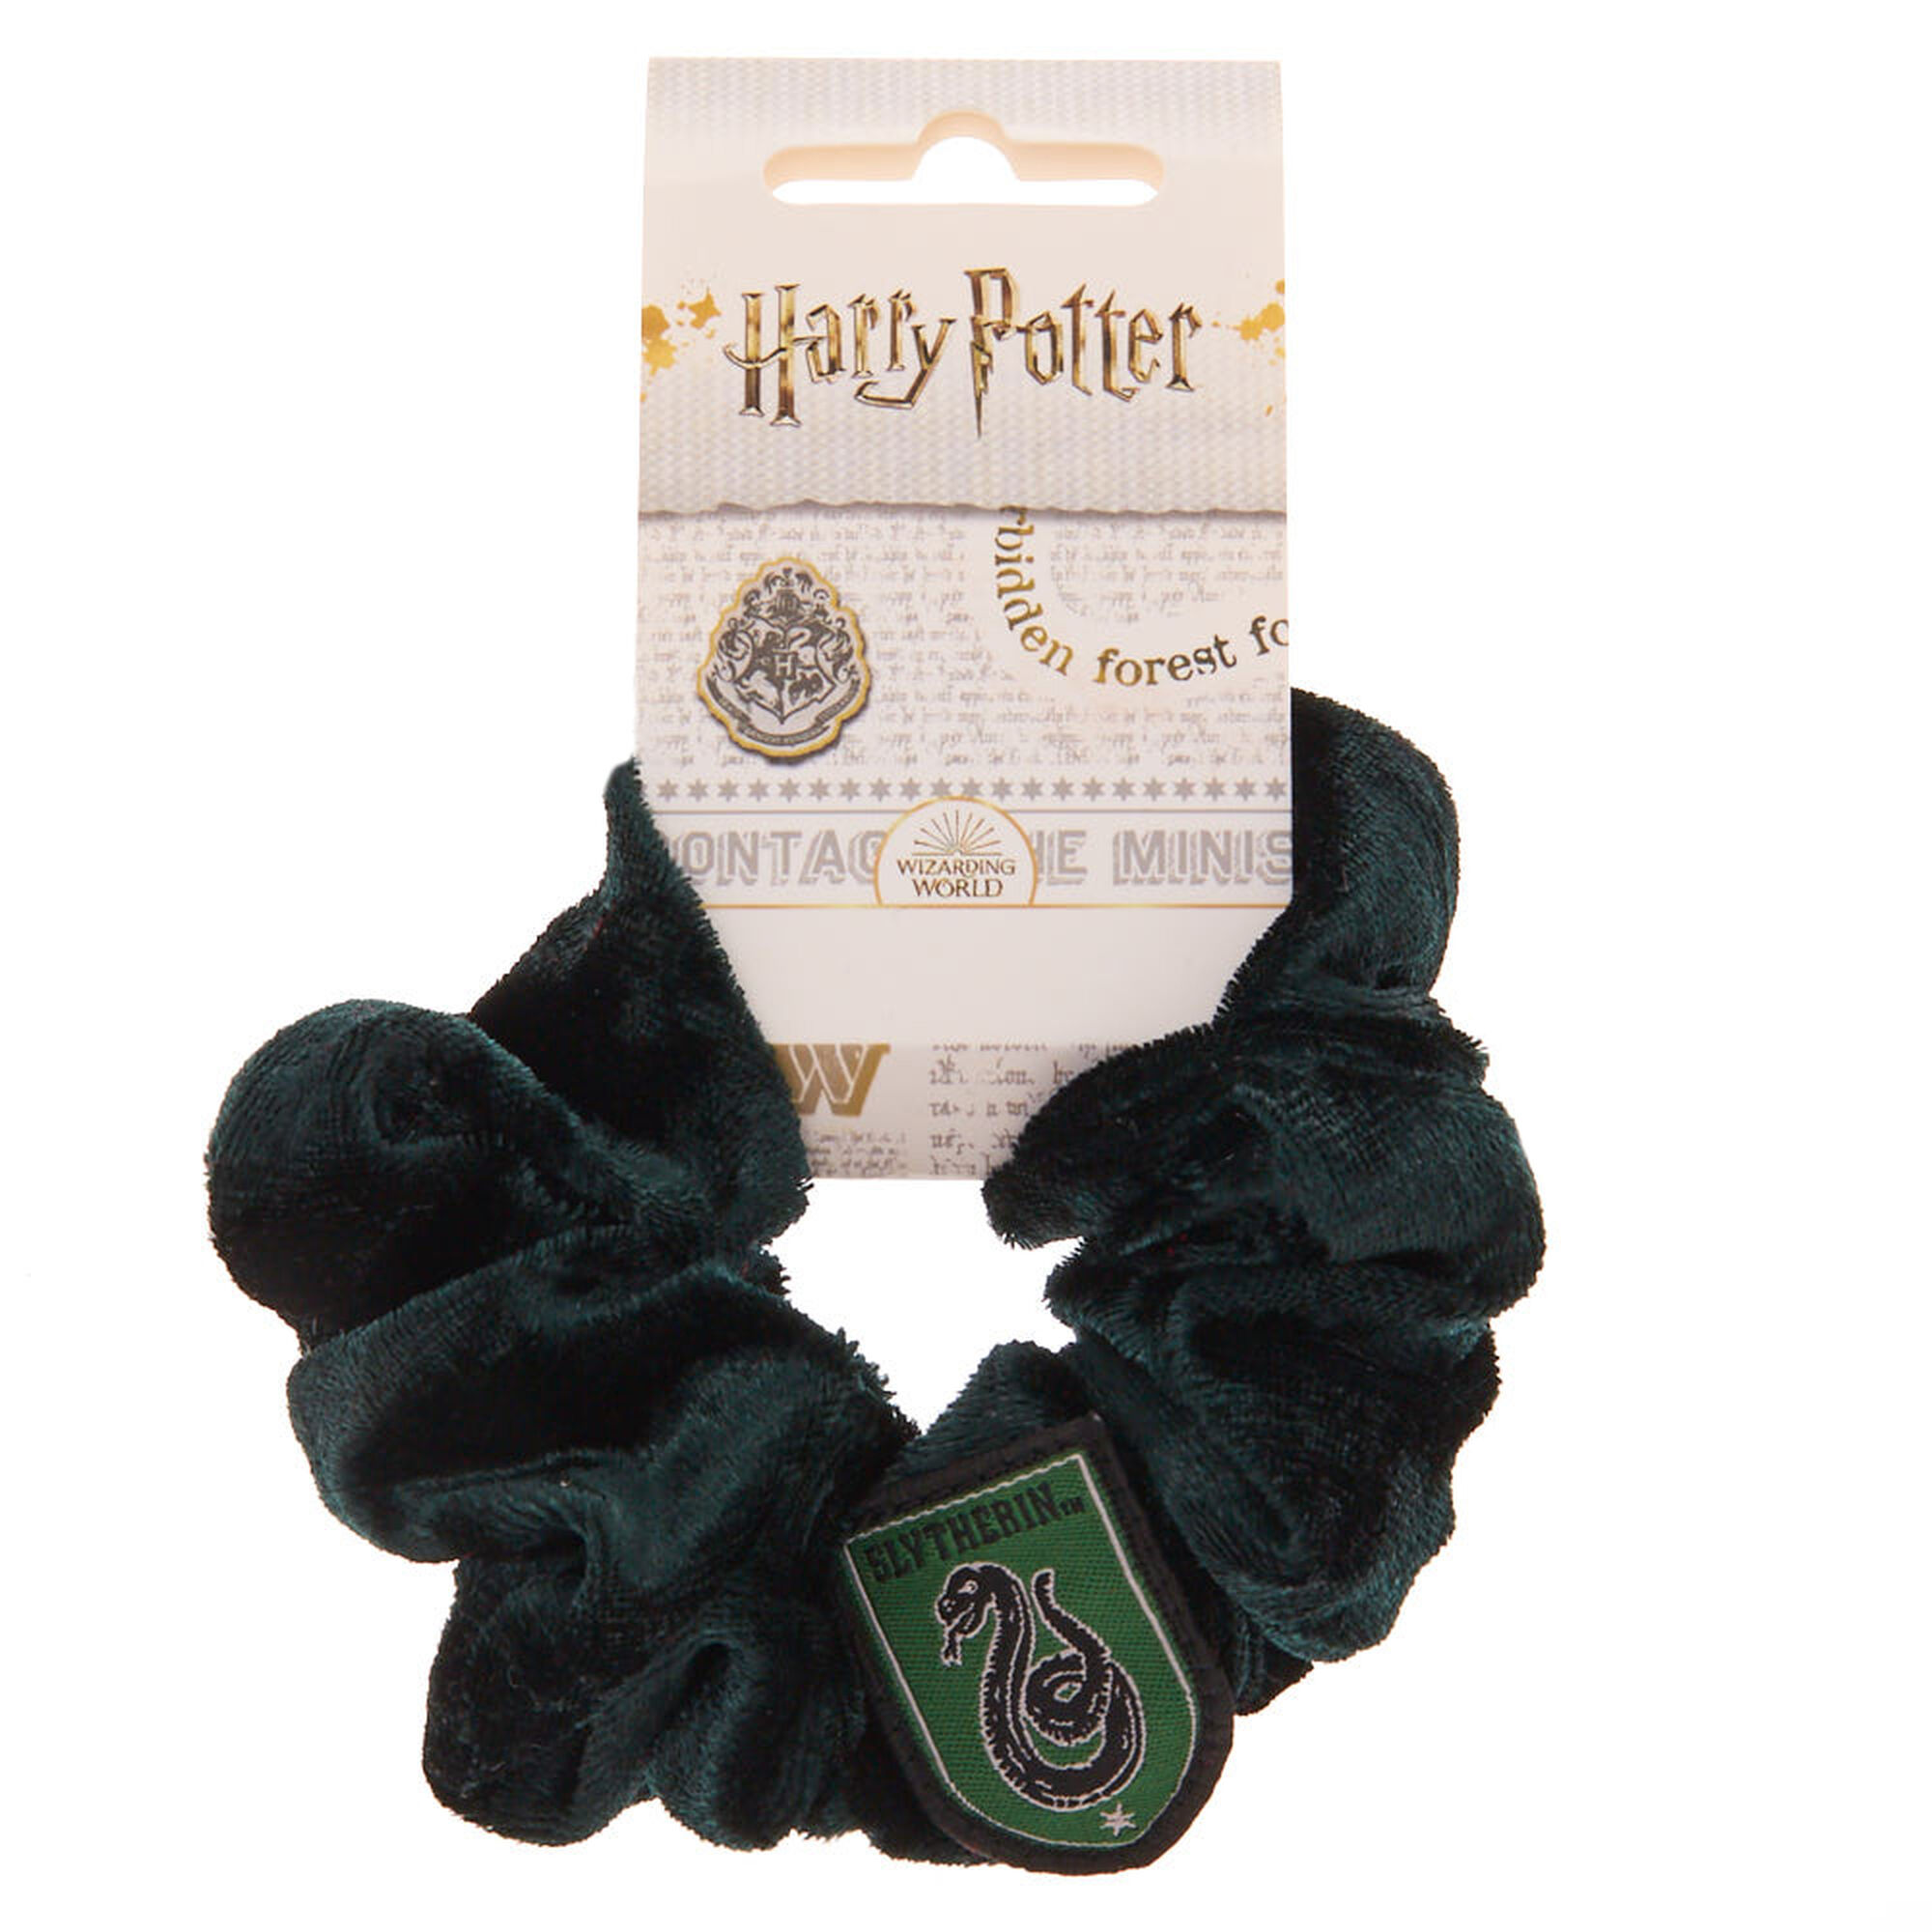 Accessoires pour cheveux Serpentard Harry Potter - Jus de